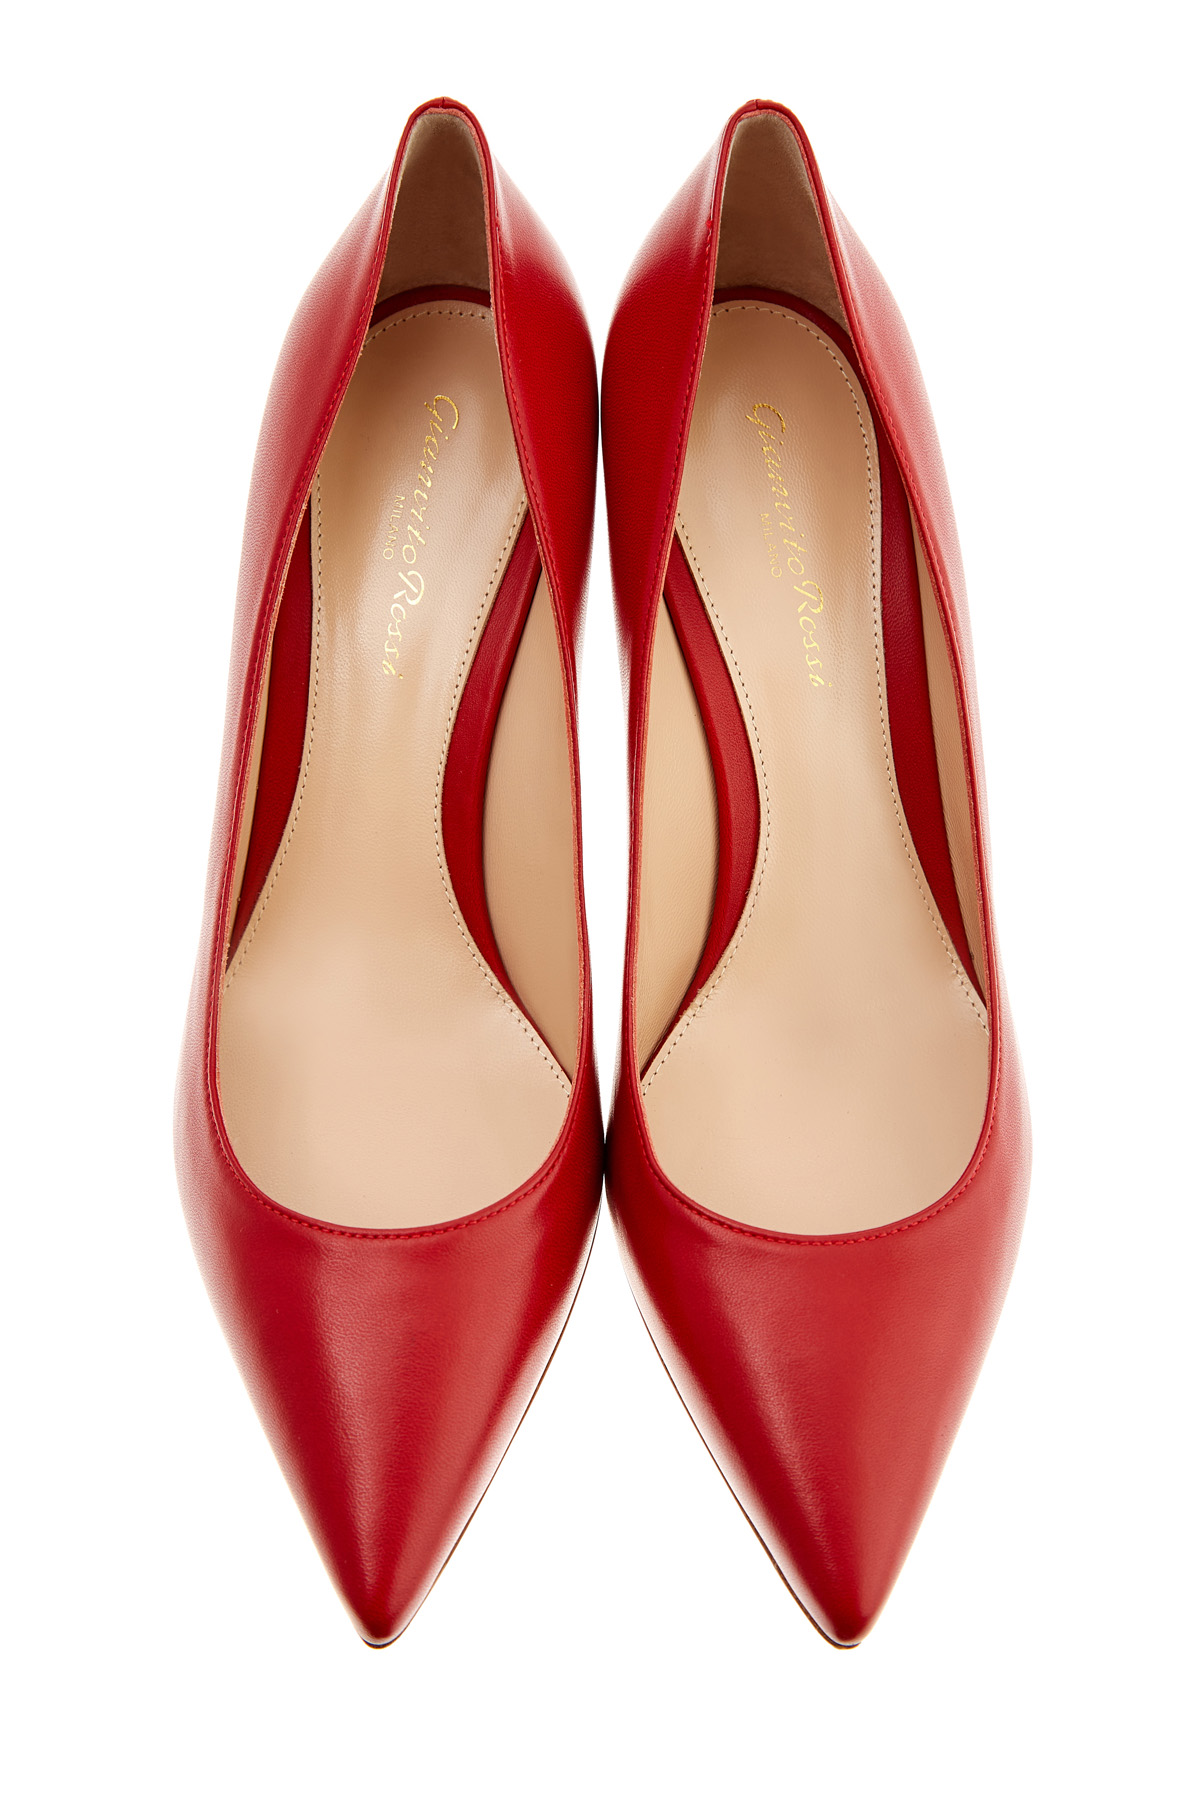 Алые туфли-лодочки из телячьей кожи GIANVITO ROSSI, цвет красный, размер 37.5 - фото 5